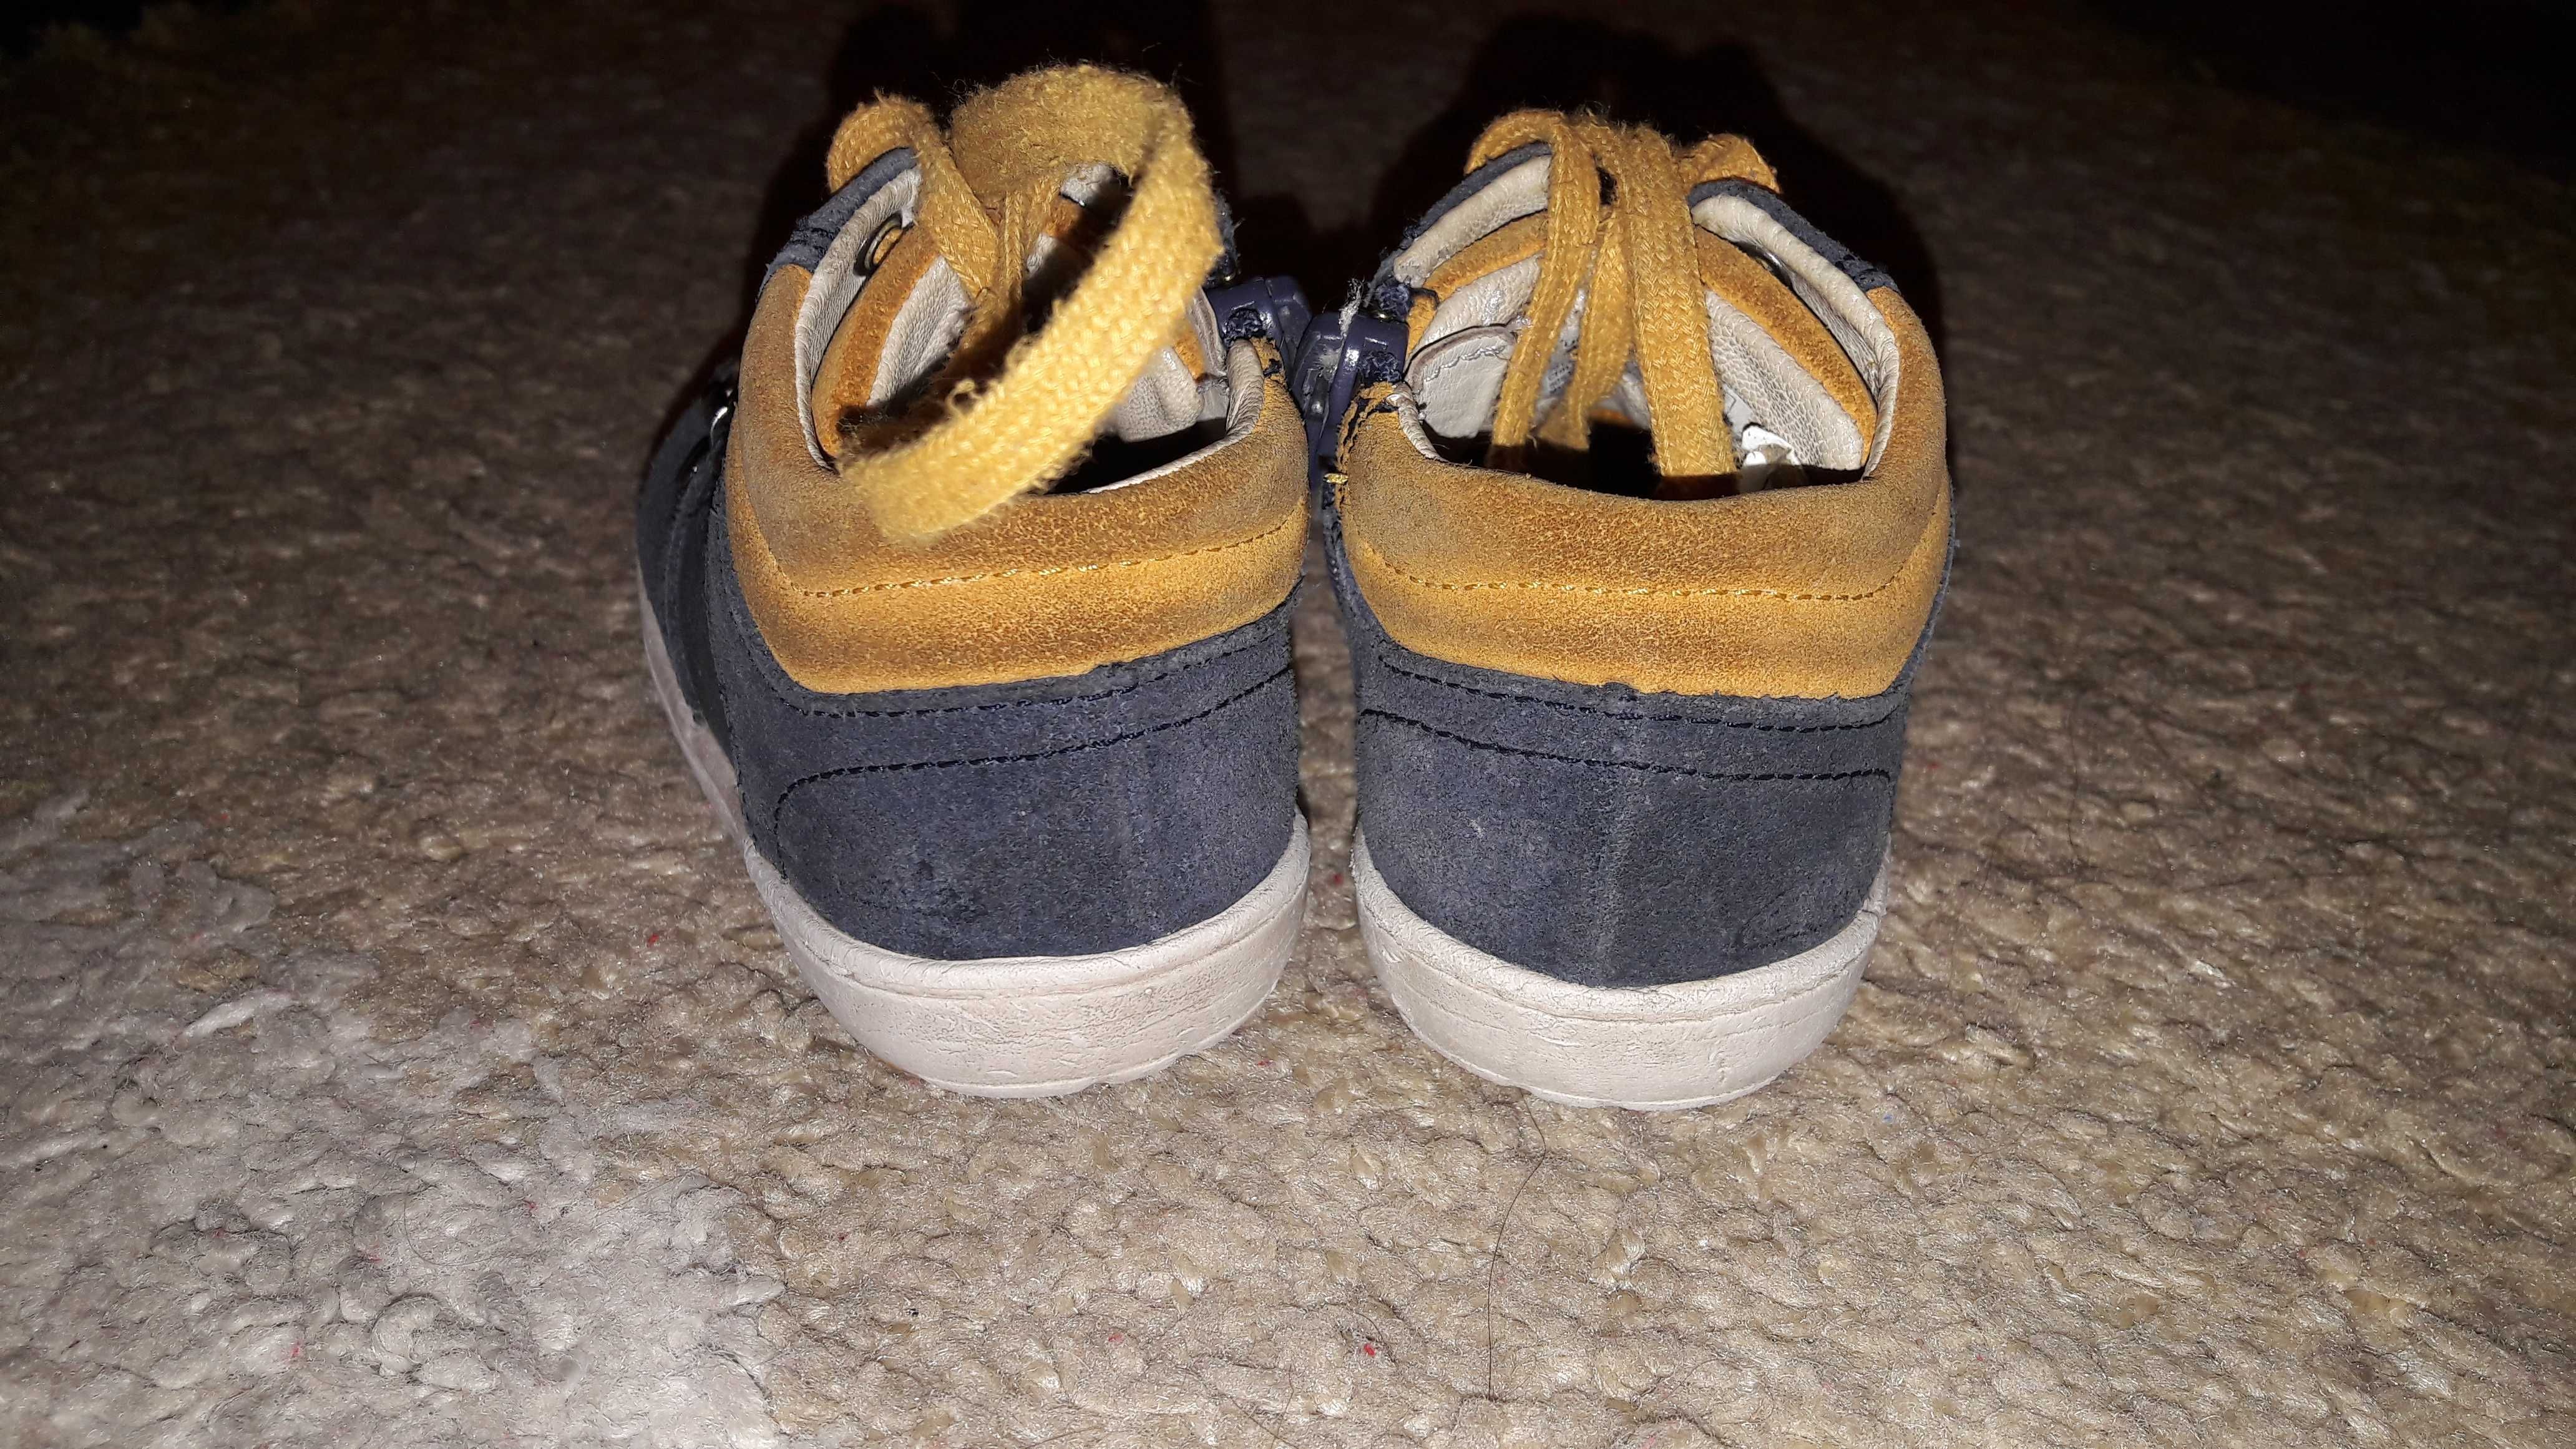 Clarks buty buciki roczki pierwsze buty rozmiar 20,5, 13 cm wkładka